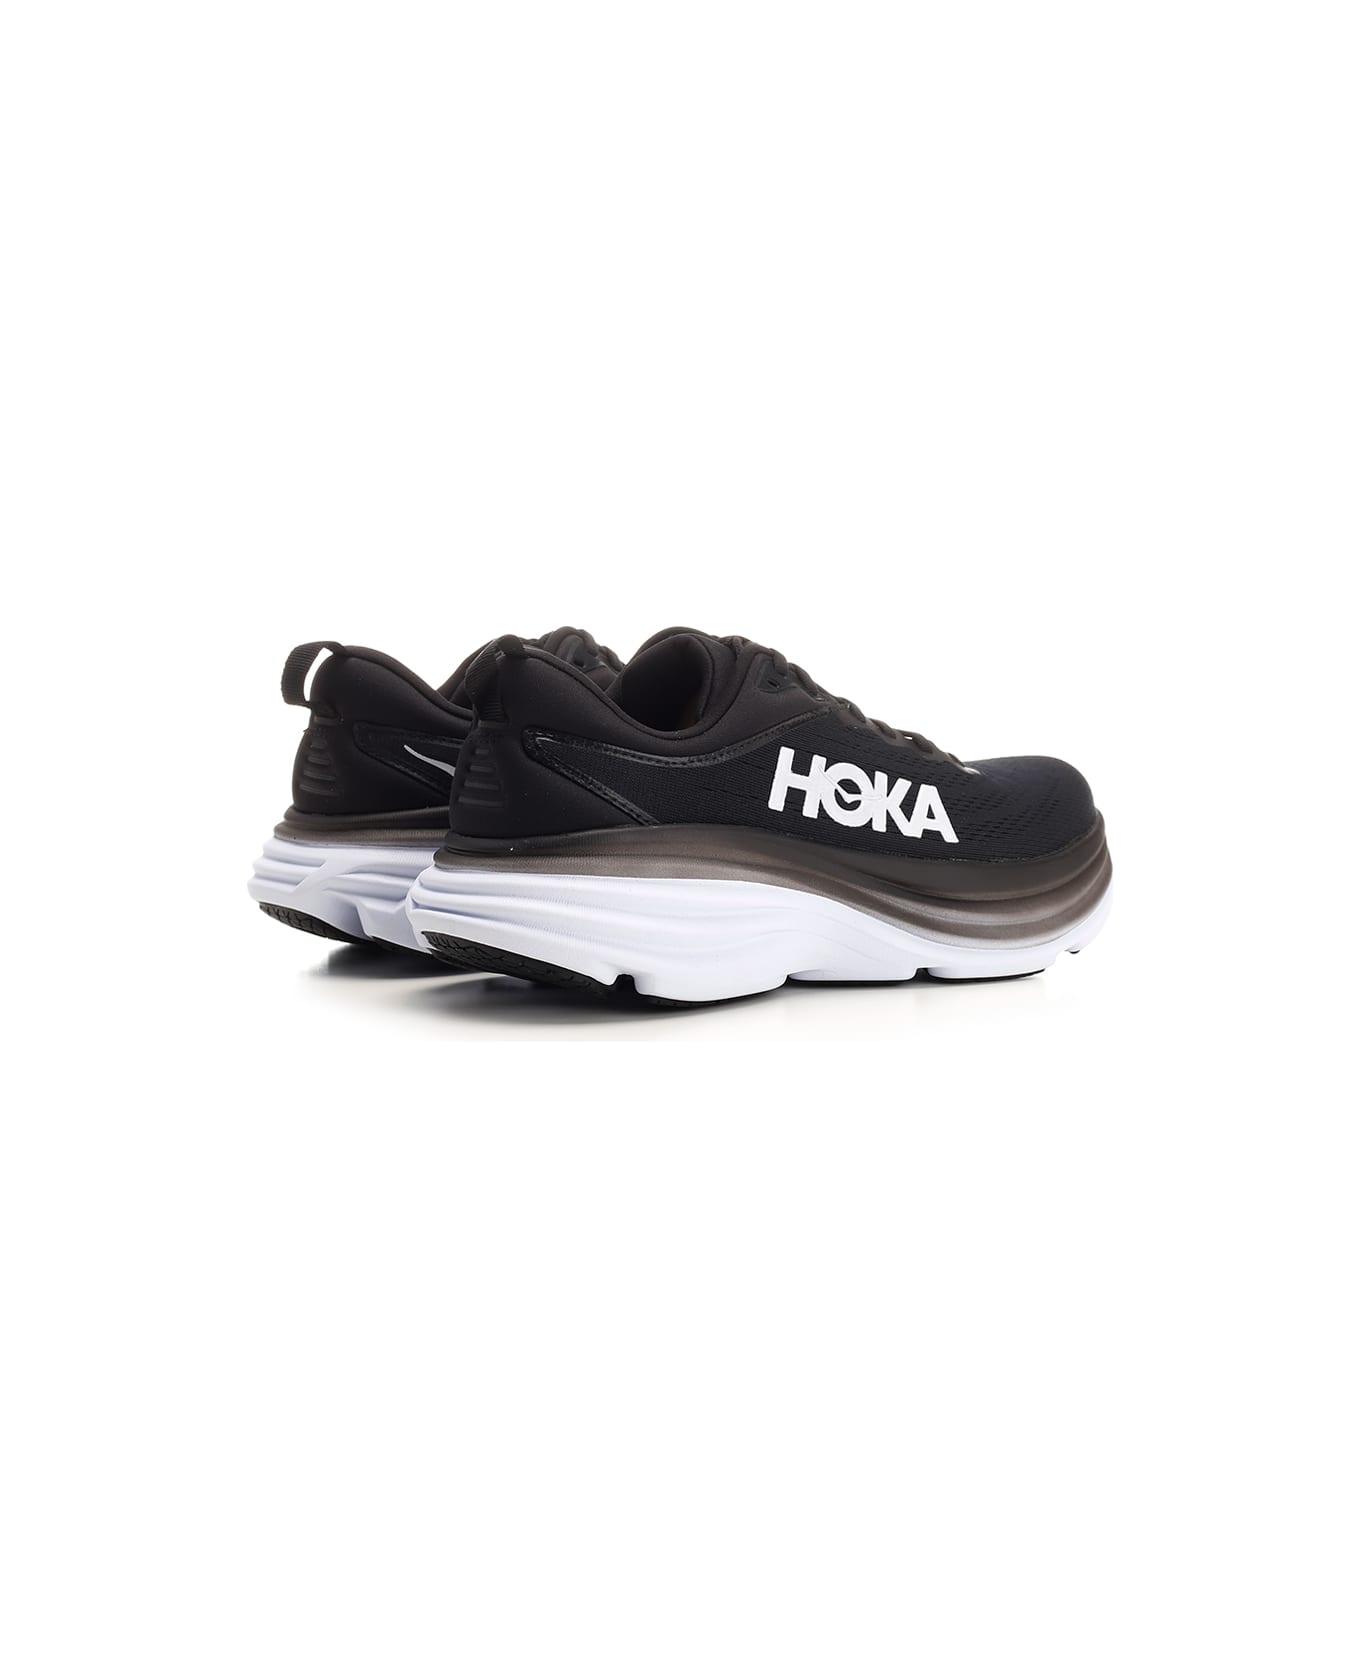 Hoka Black "bondi" Sneakers - Black